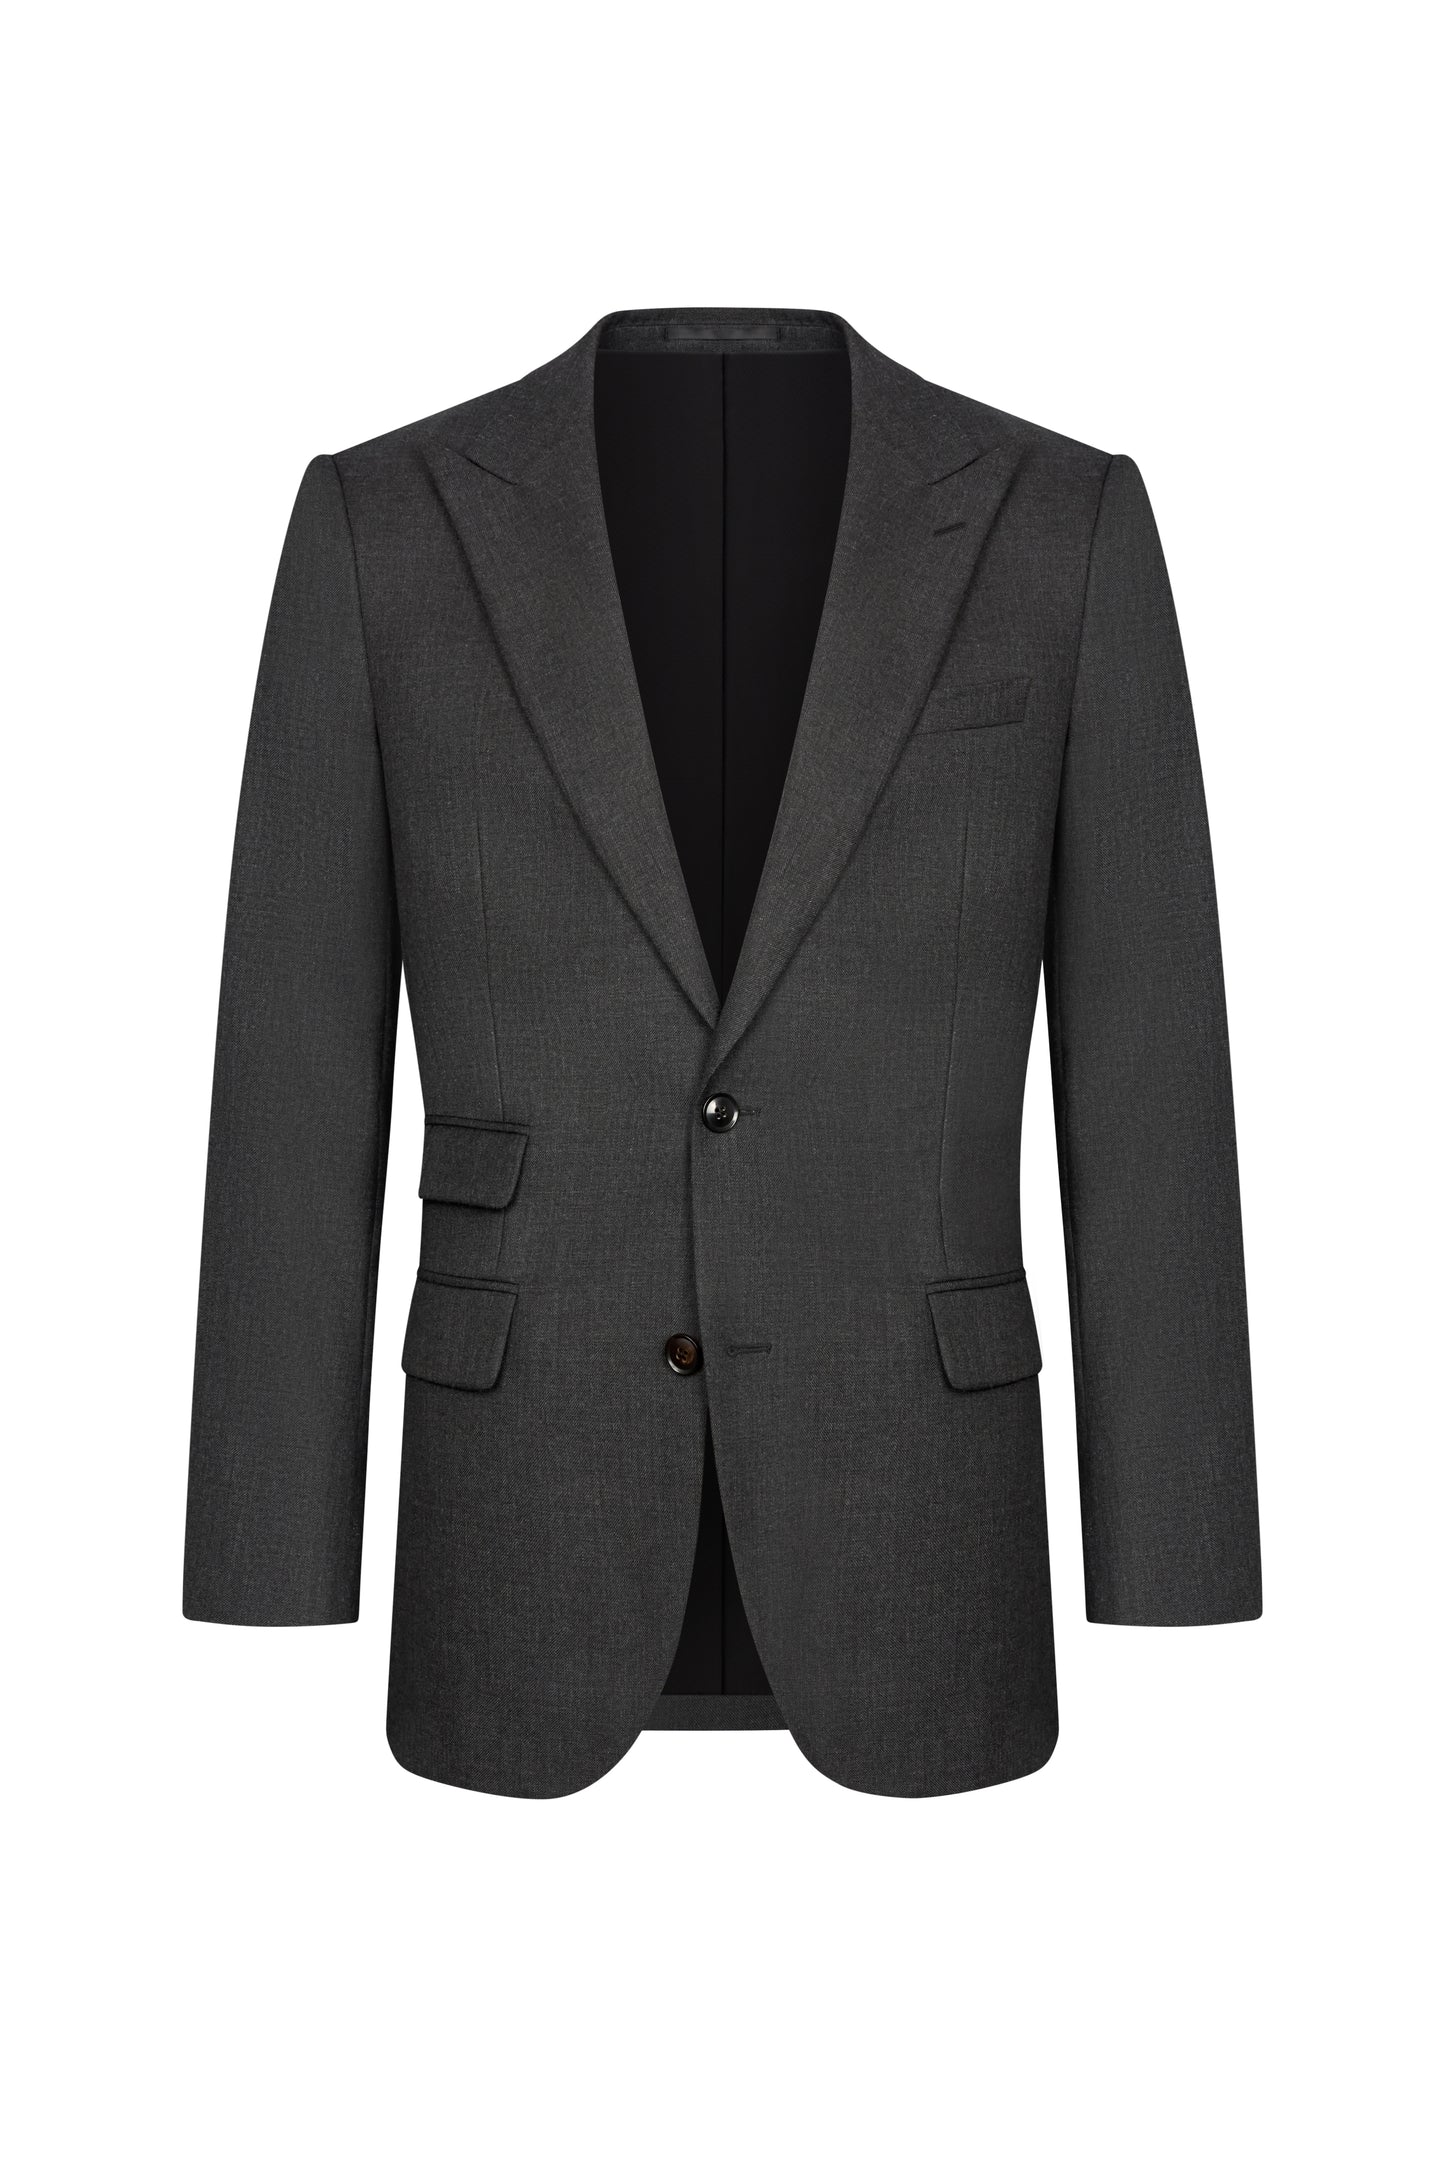 Charcoal Grey Heavy Twill Custom Jacket